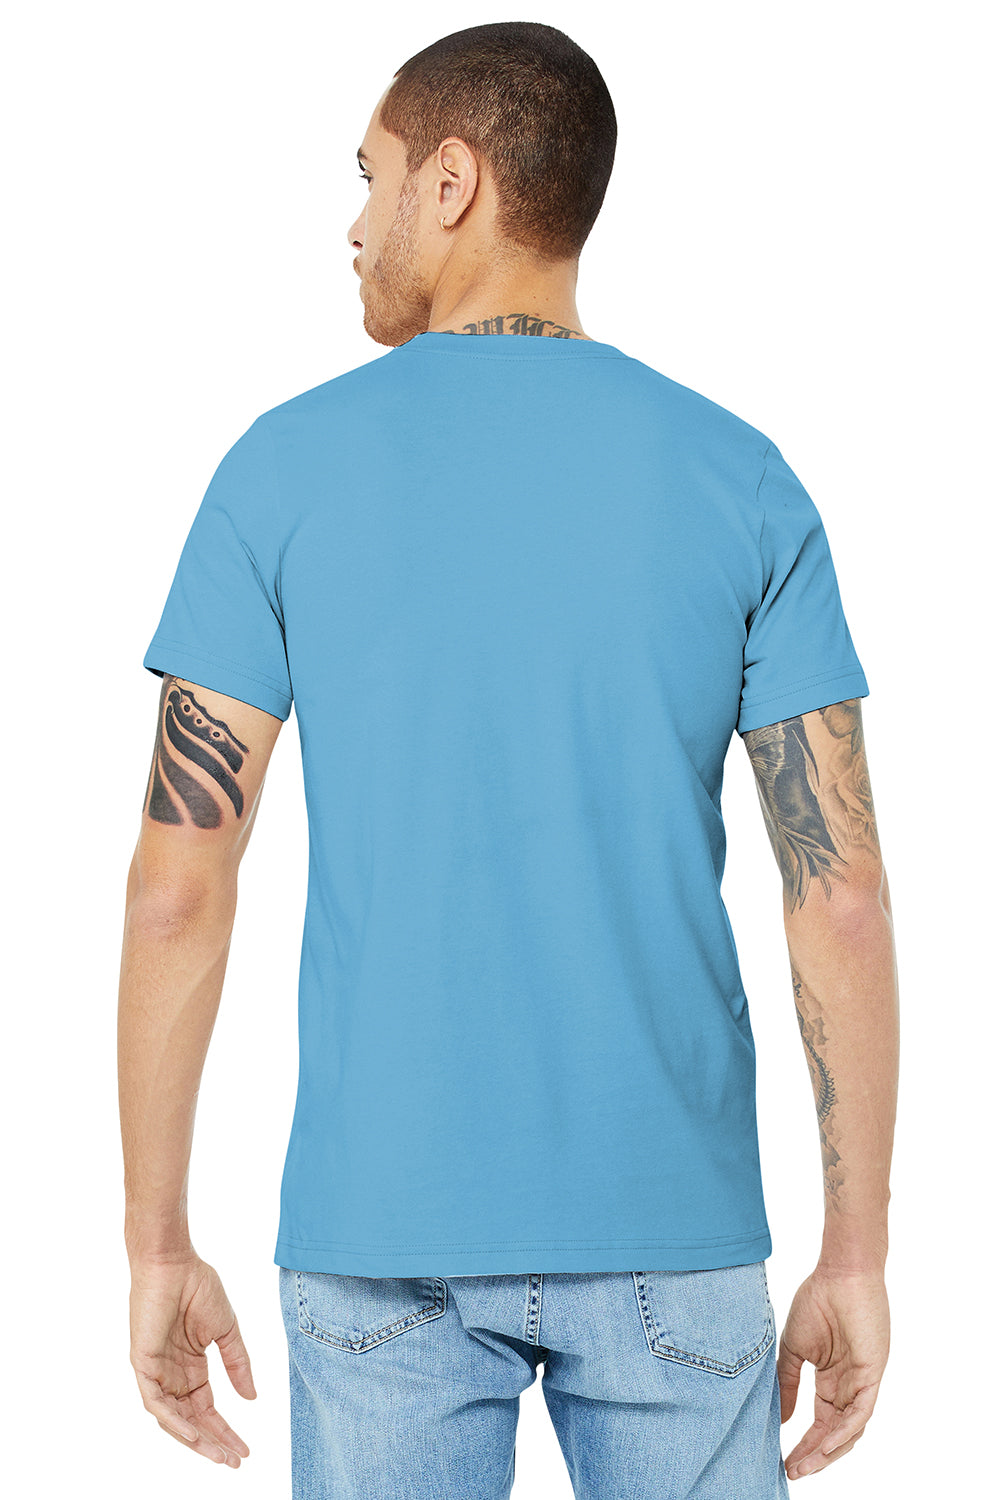 Bella + Canvas BC3001/3001C Mens Jersey Short Sleeve Crewneck T-Shirt Ocean Blue Model Back